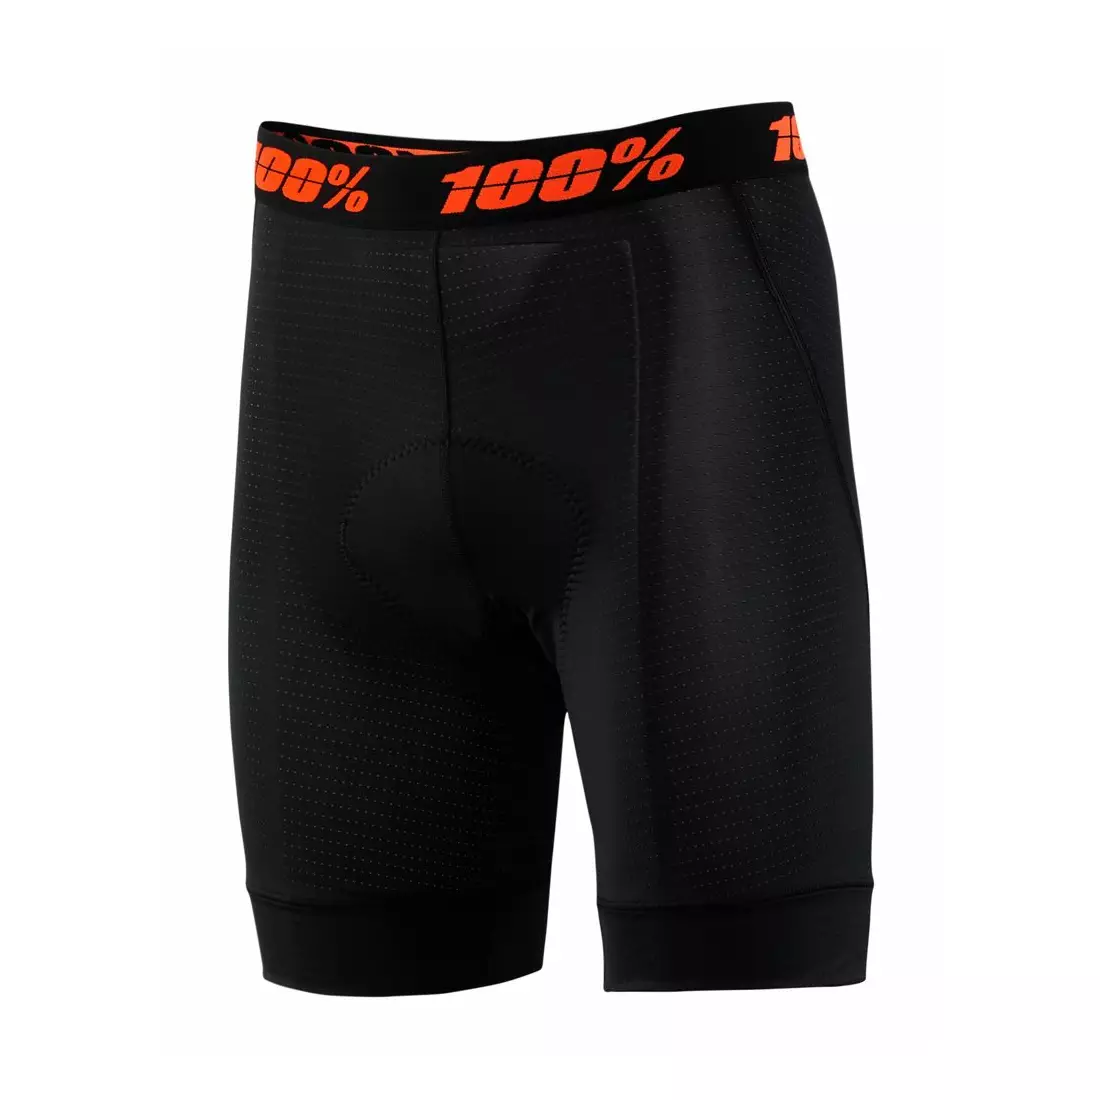 100% Herren-Boxershorts mit Fahrradpads crux liner black STO-49901-001-28